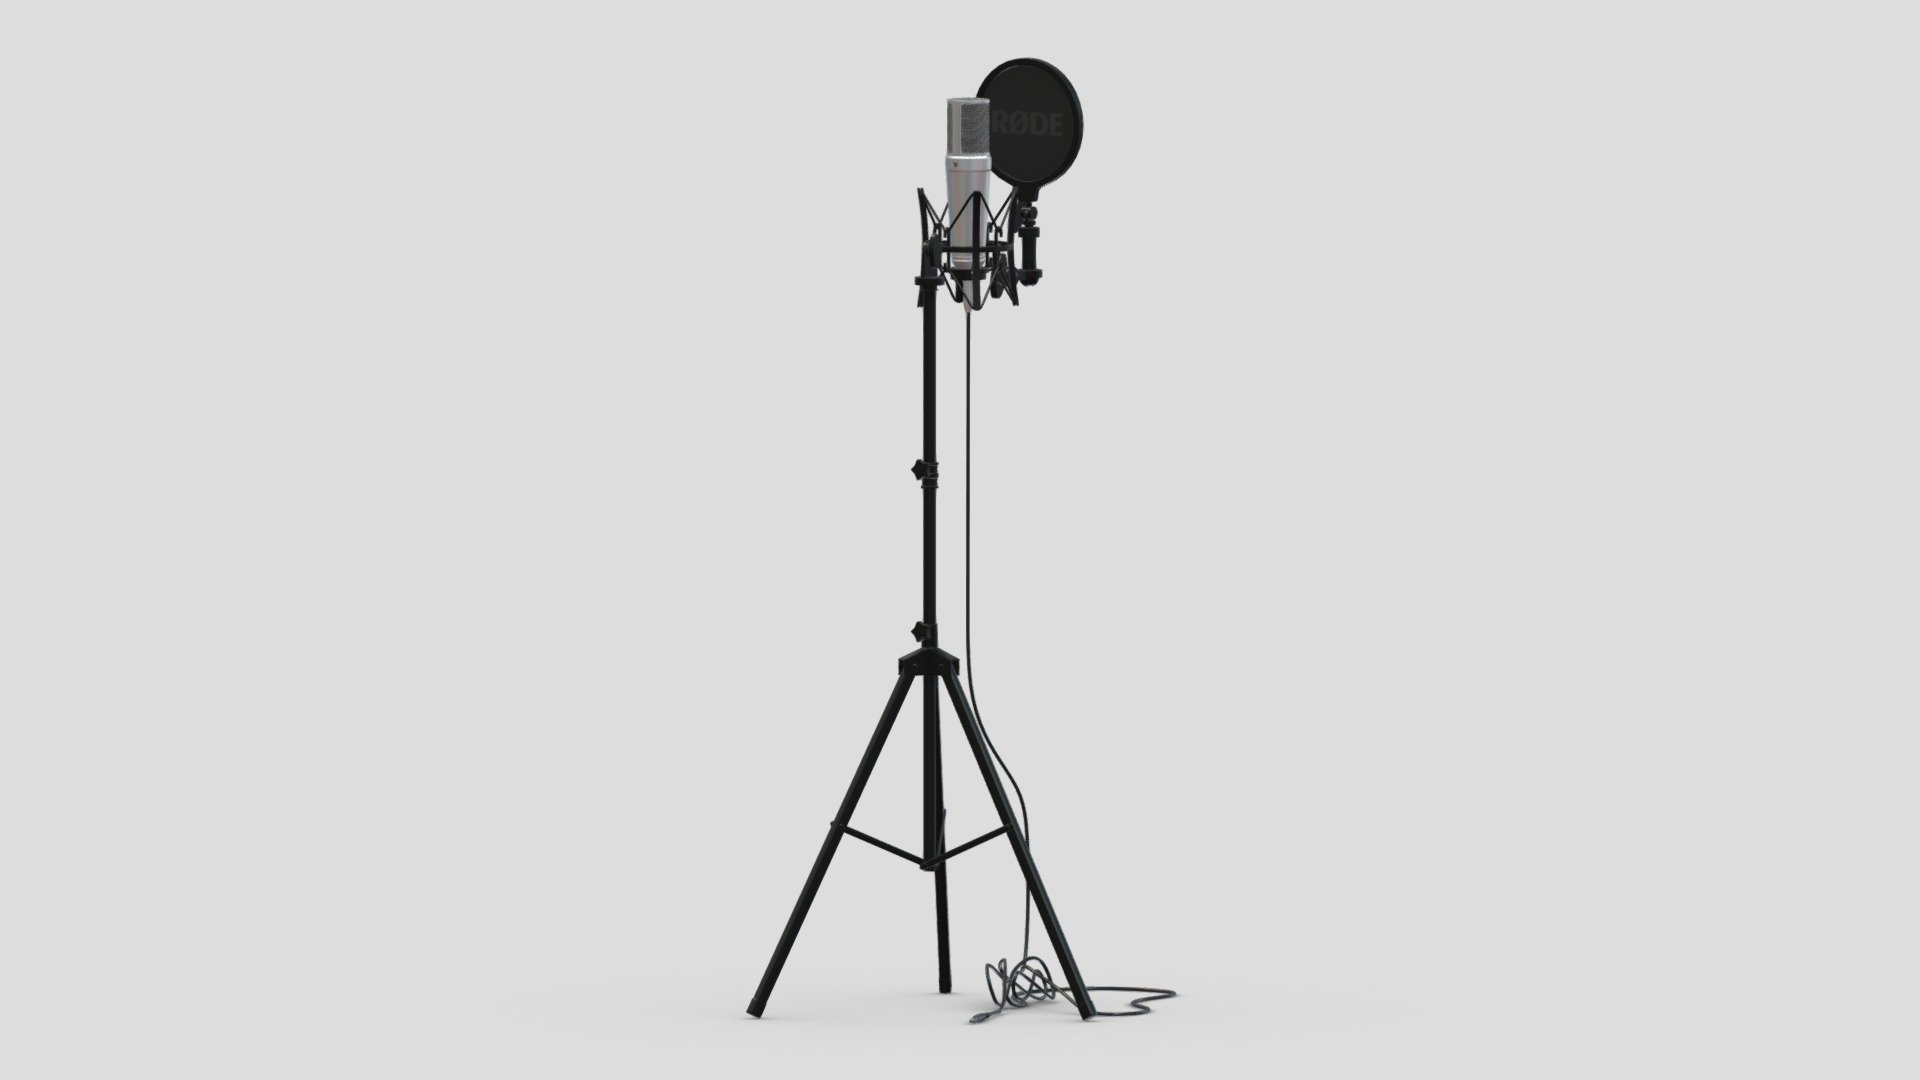 modèle 3D de Studio Microphone Rode and Stand Modèle 3D